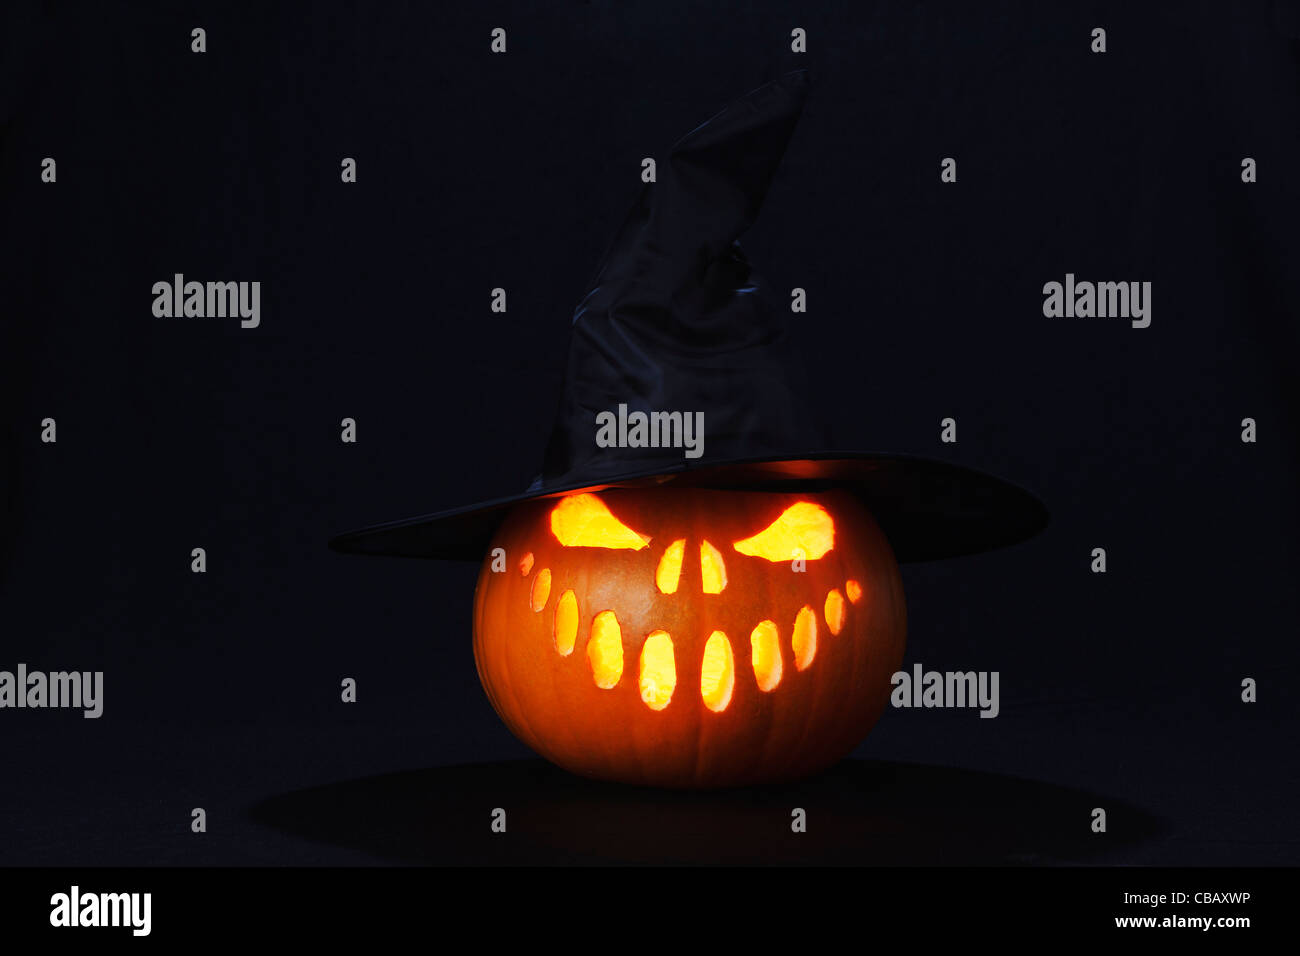 Lanterne citrouille Halloween face au mal et de sorcières hat allumé avec une bougie Banque D'Images